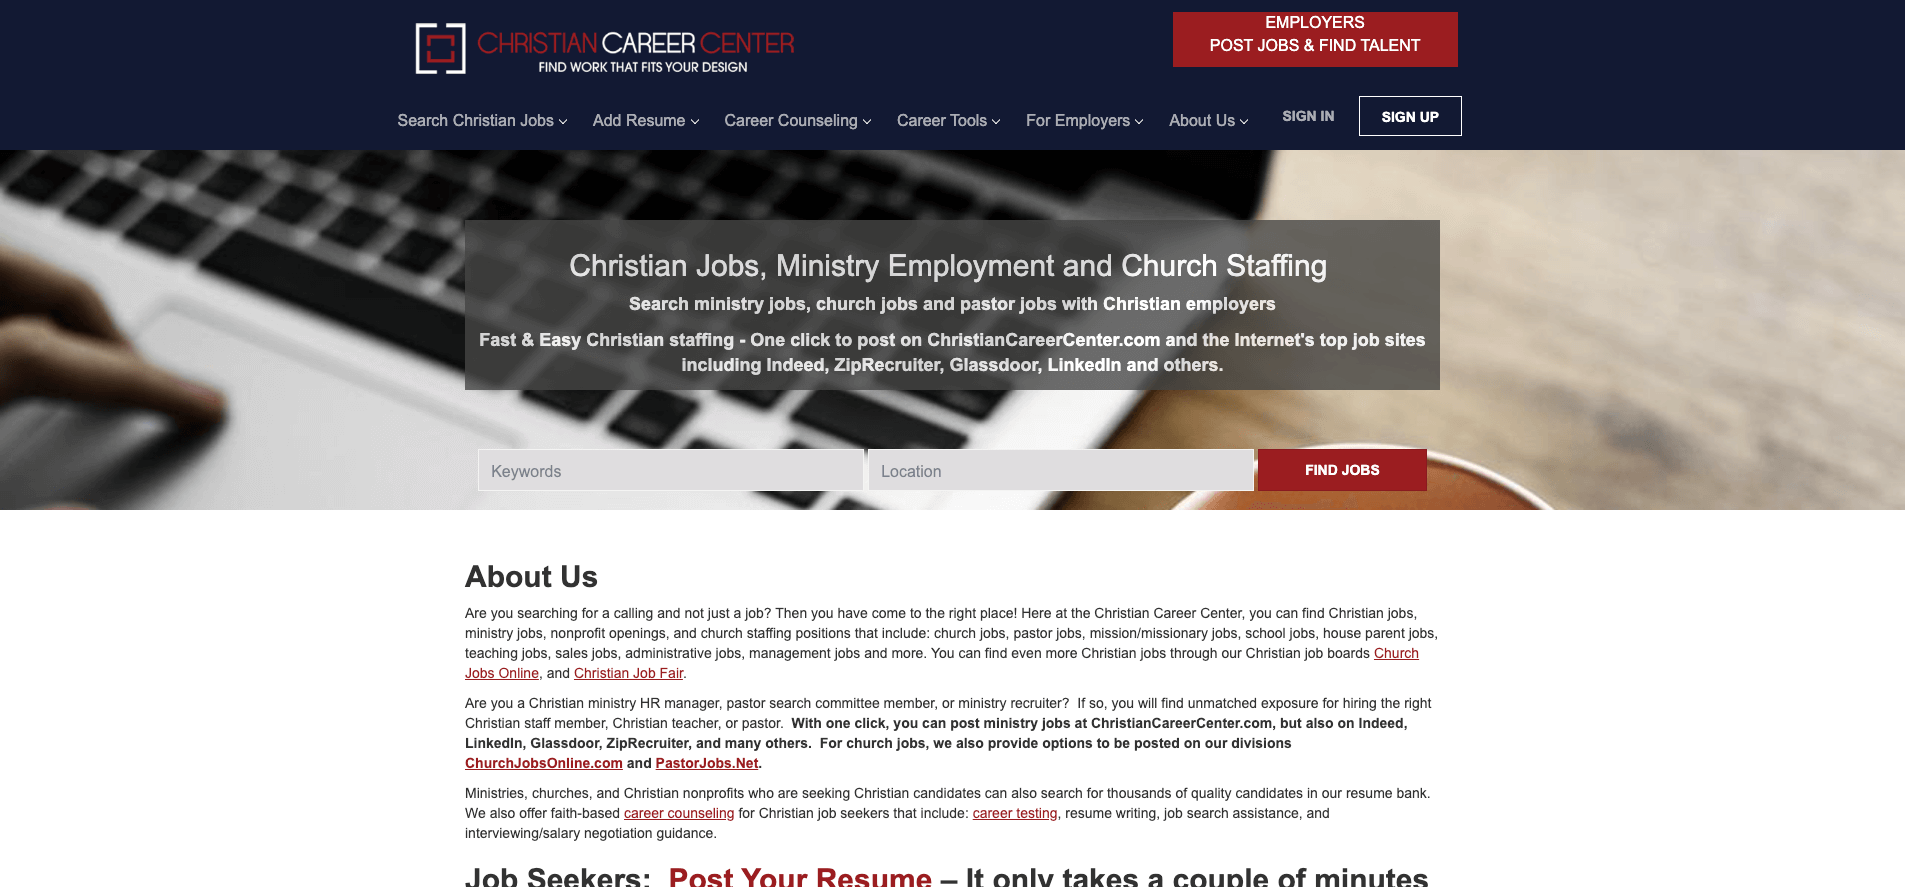 Christian Career Center